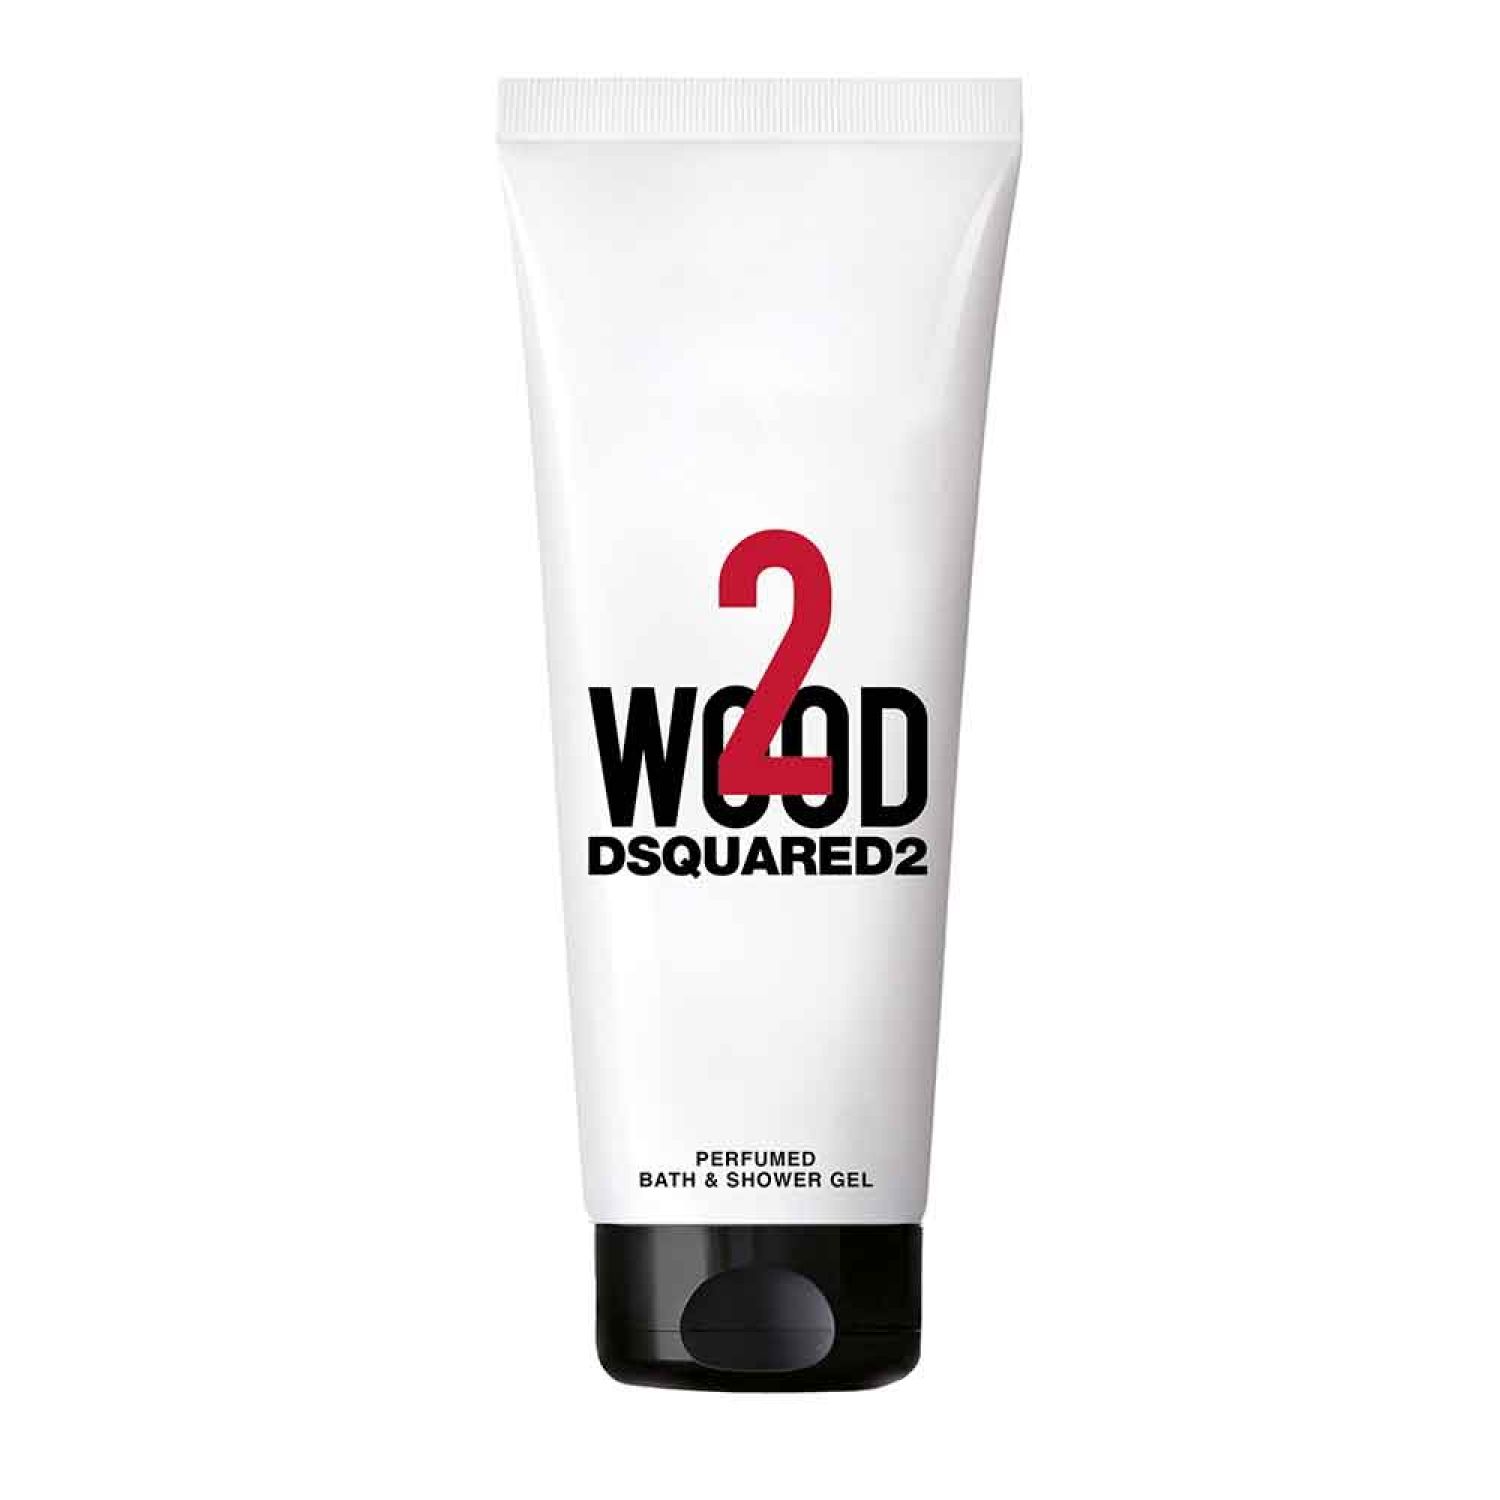 Dsquared2 2 Wood pour Homme Perfumed Bath & Shower Gel pour Homme